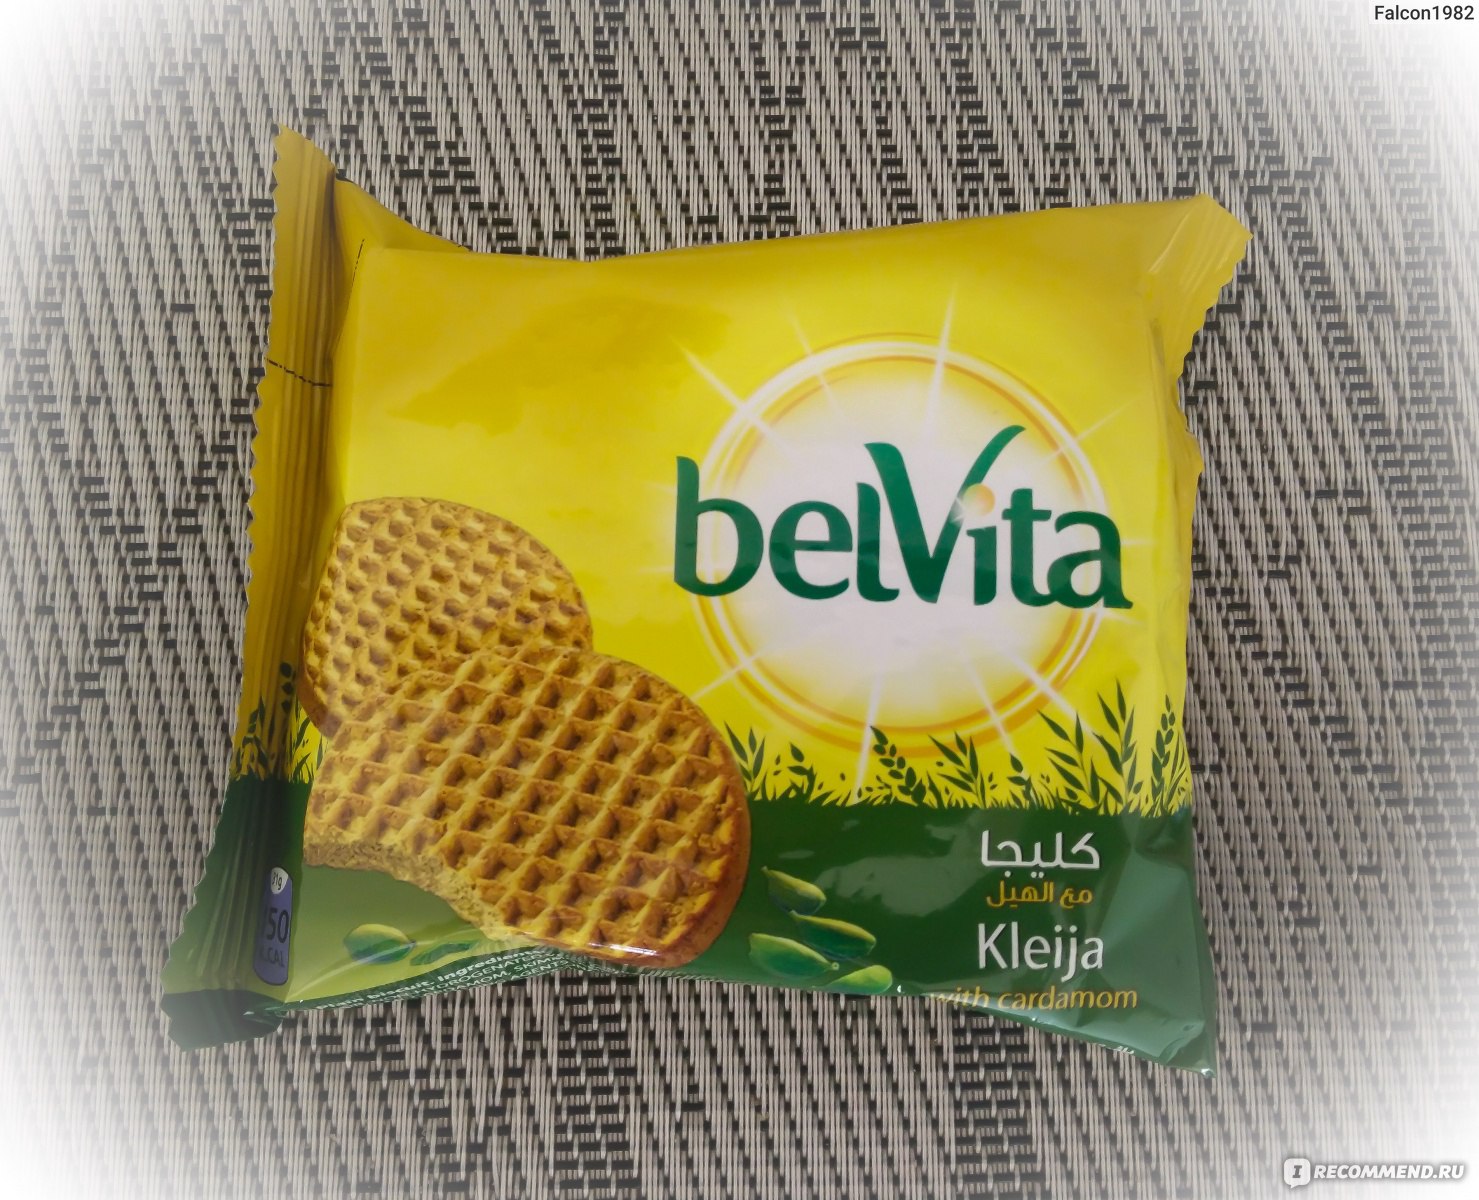 Категория: Разные продукты Бренд: Belvita Тип продукта: Печенье.